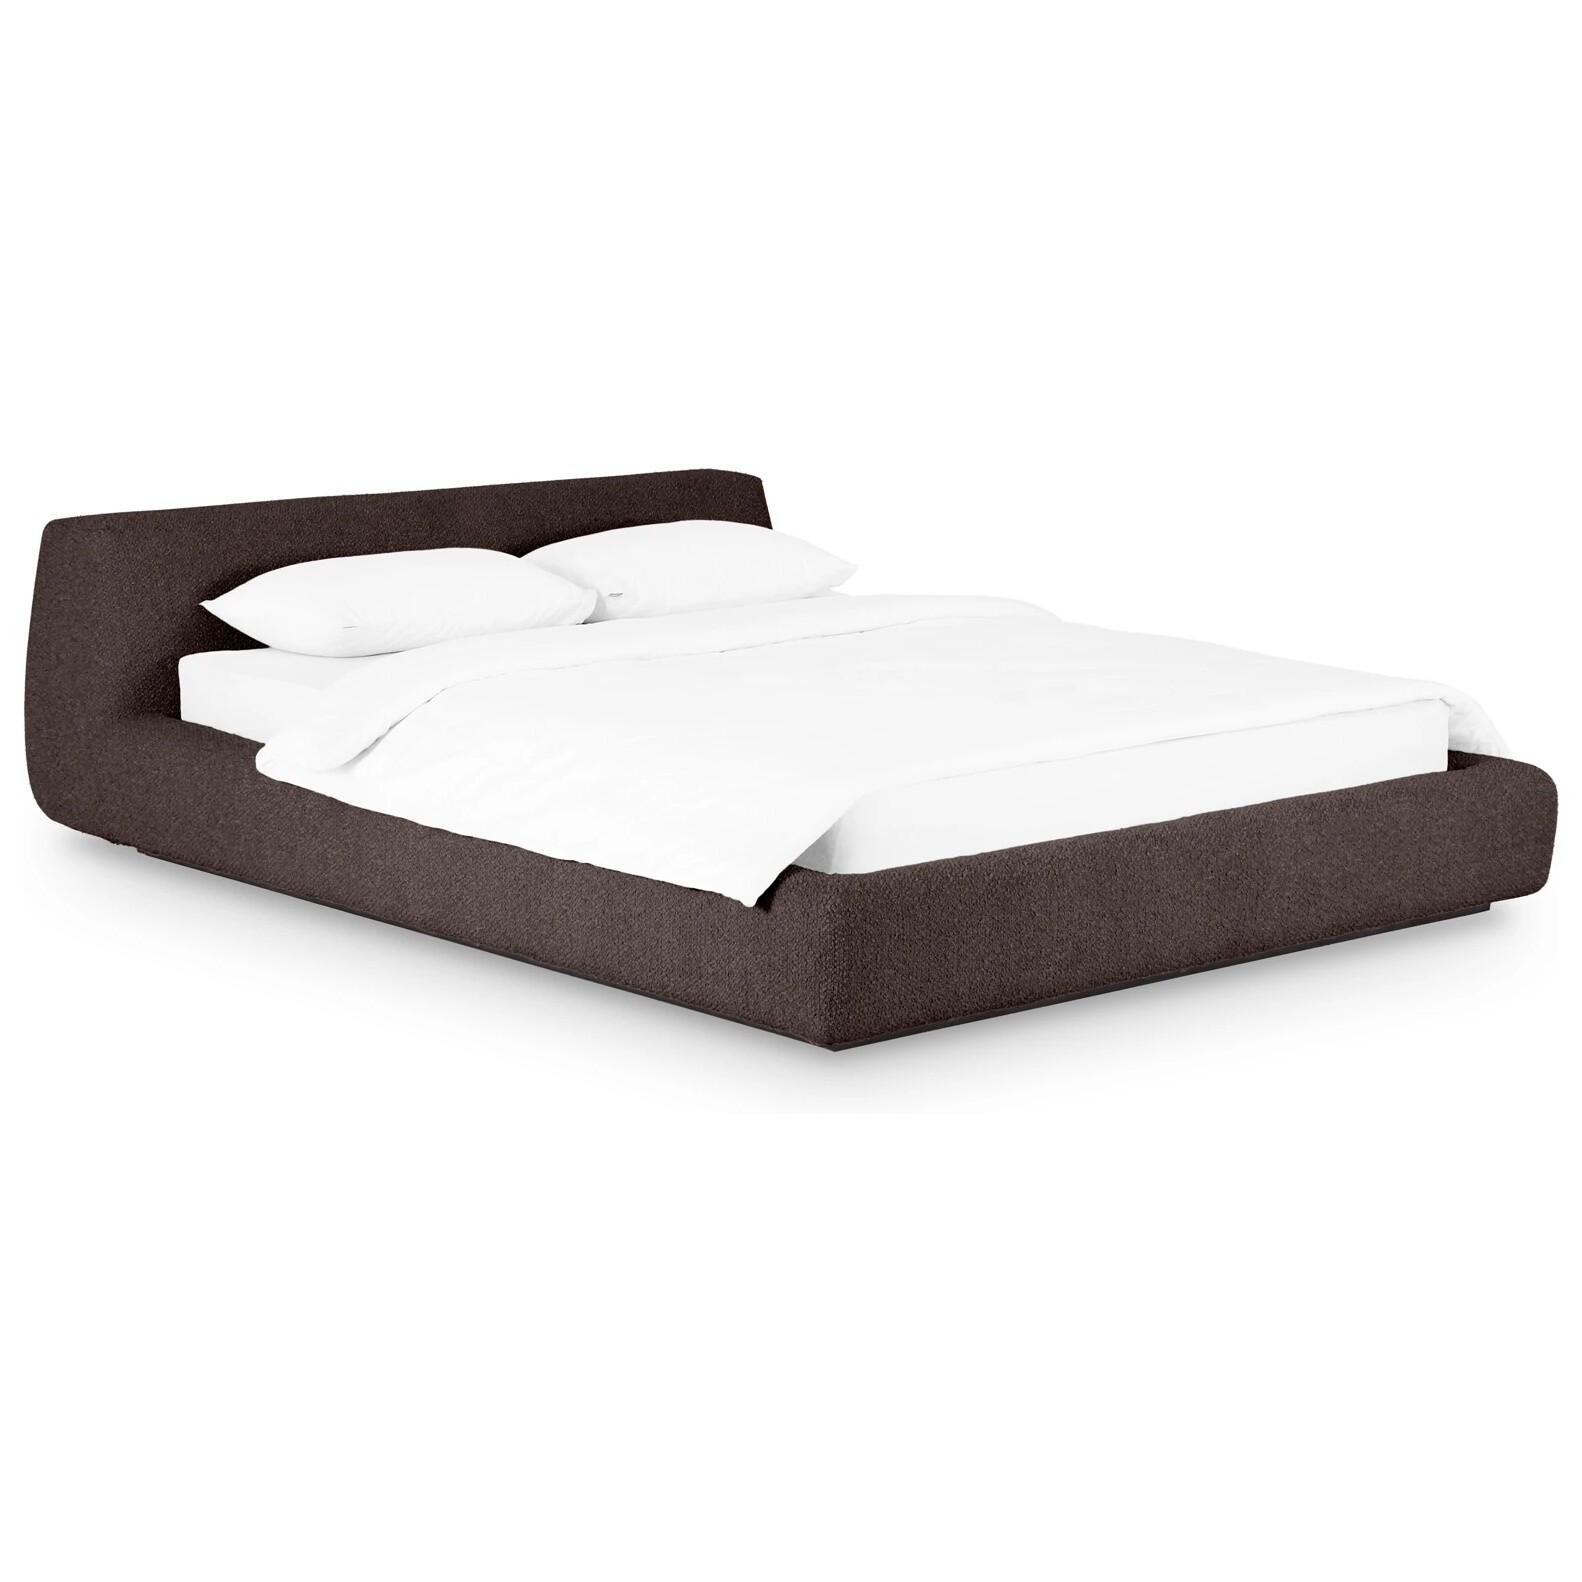 Кровать двуспальная со съемным чехлом букле 160х200 см коричневая Vatta Buckle brown